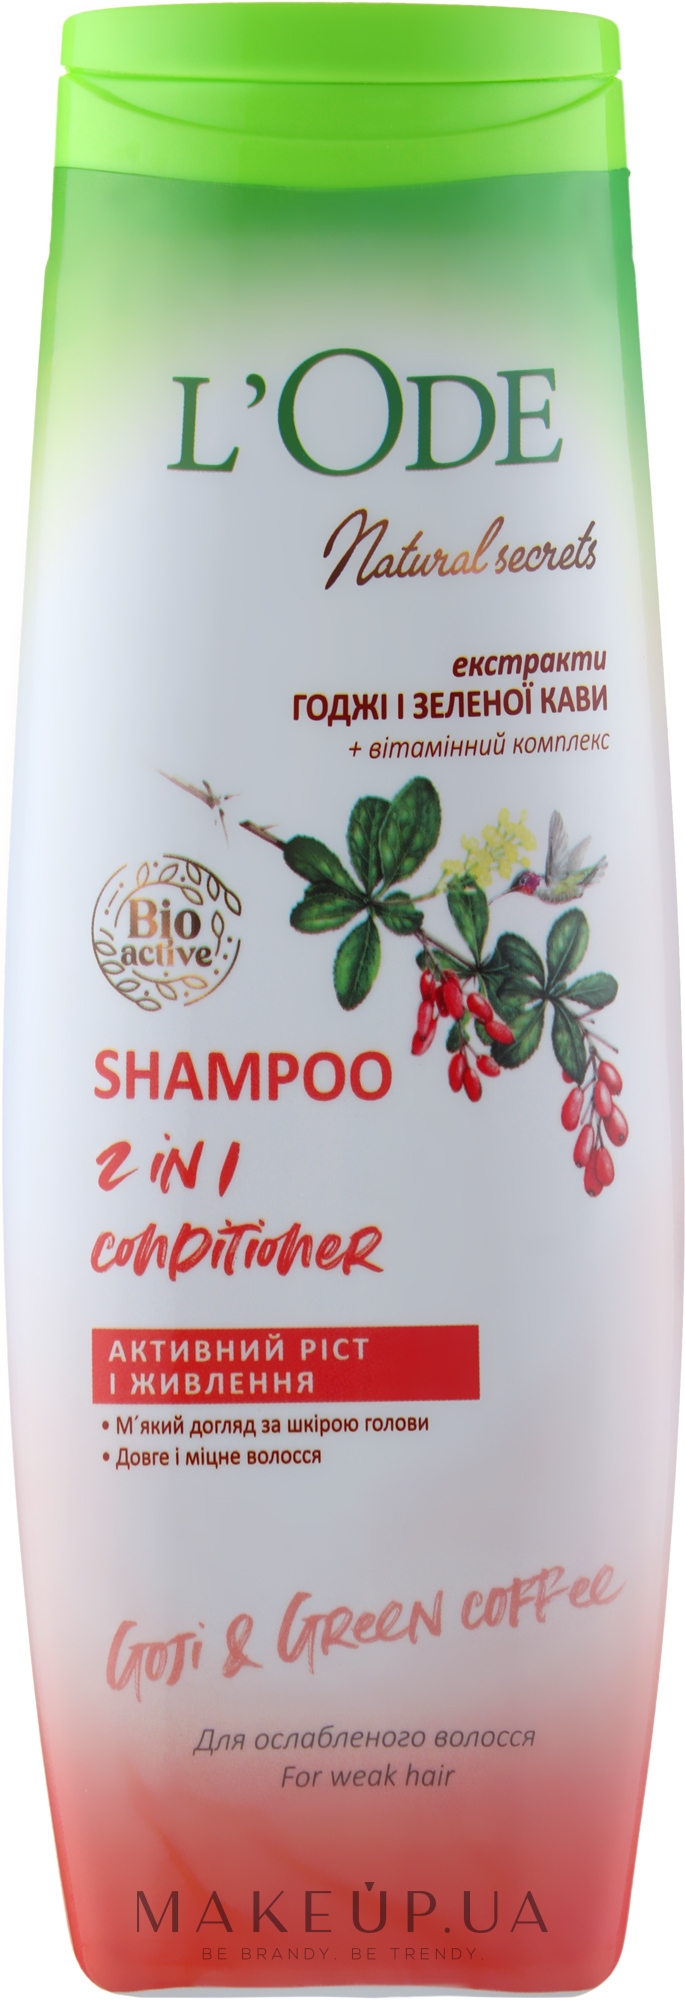 Шампунь-кондиціонер "Активний ріст і живлення" для ослабленого волосся - L'Ode Natural Secrets Shampoo 2 In 1 Conditioner Goji & Green Coffee — фото 400ml